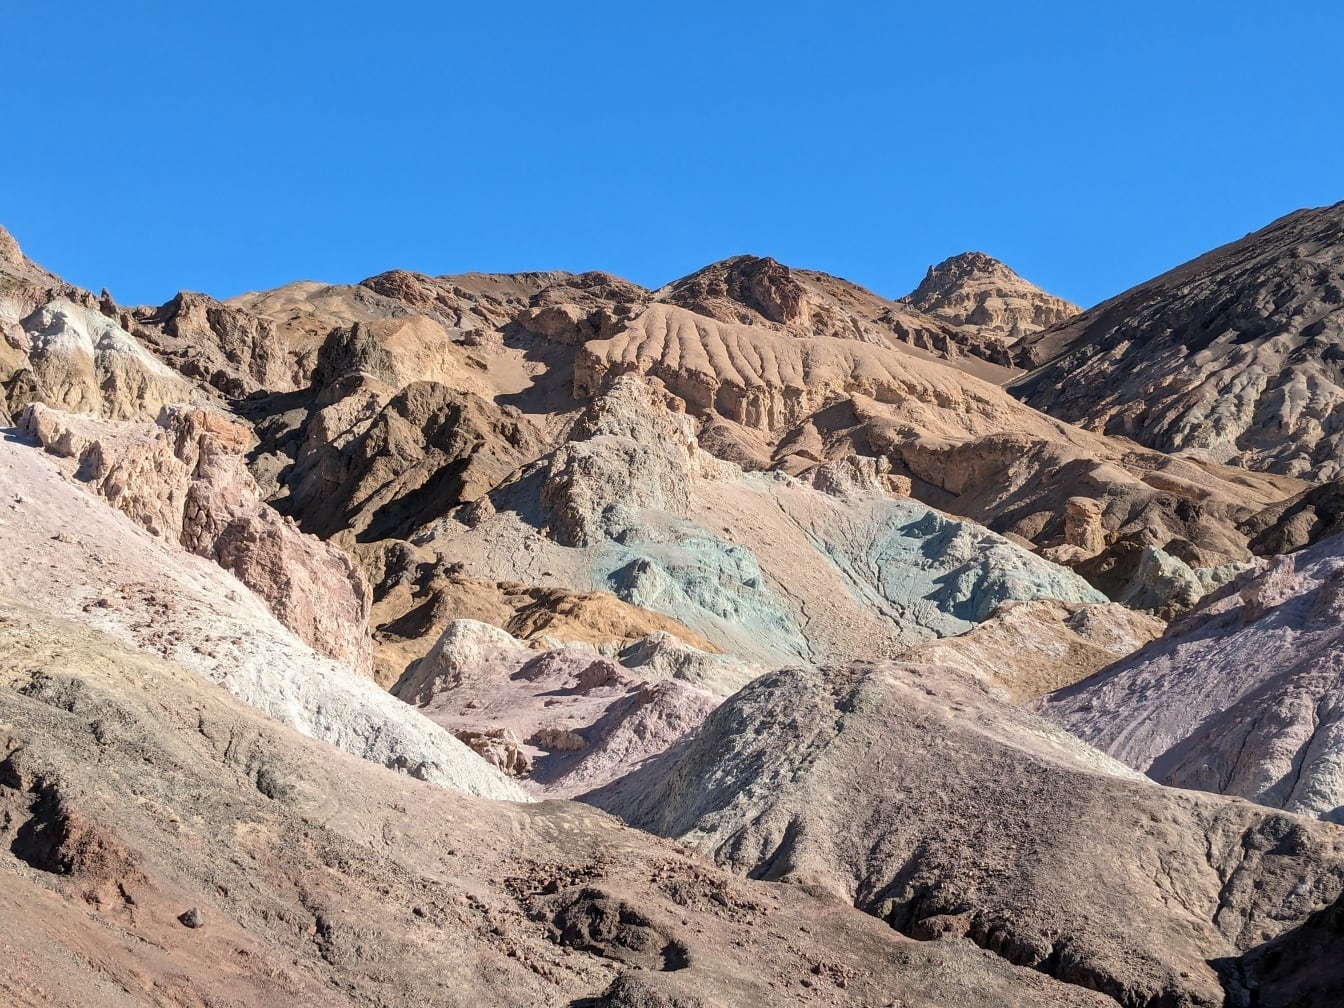 ภาพถ่ายระยะใกล้ของภูเขาหินทรายในอุทยานแห่งชาติ Death Valley